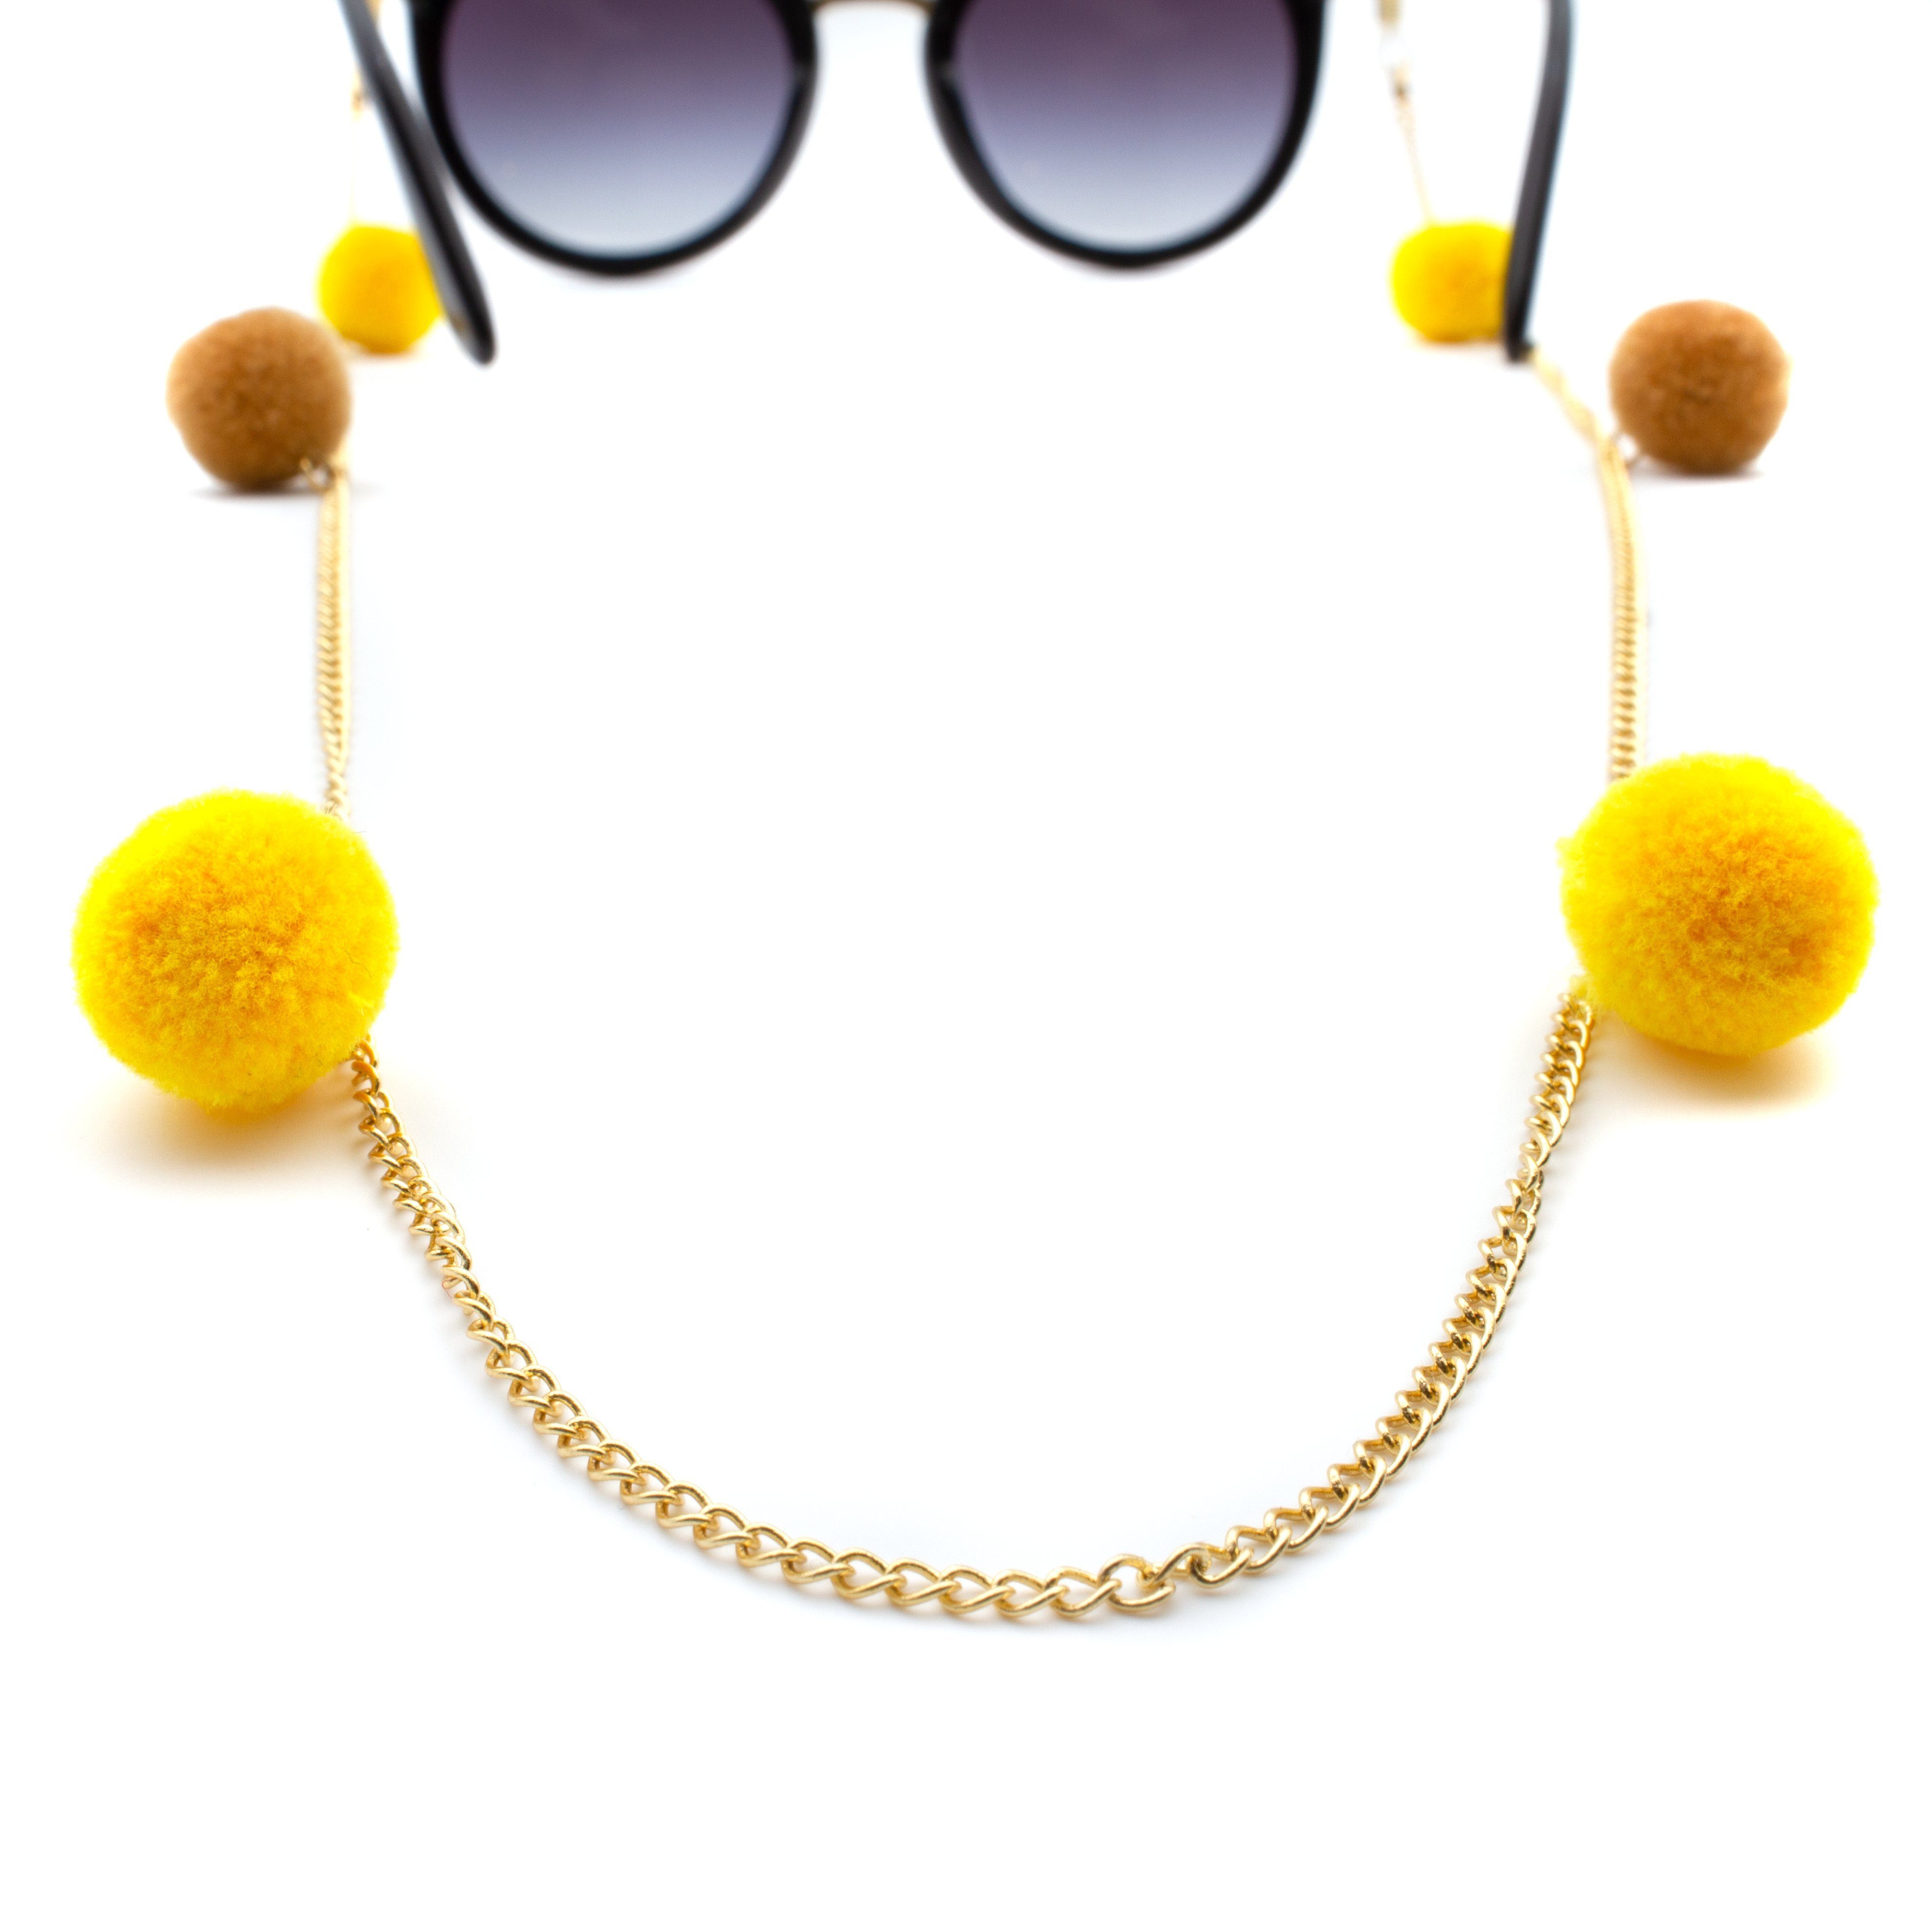 925er Tel & Brillenkette in Aviv oder Premium Gelb-Braun Versiegelung - Karat Samtoptik Silber Bommeln Brillenband GERNEO® - GERNEO Brillenband, Gold 18 aus